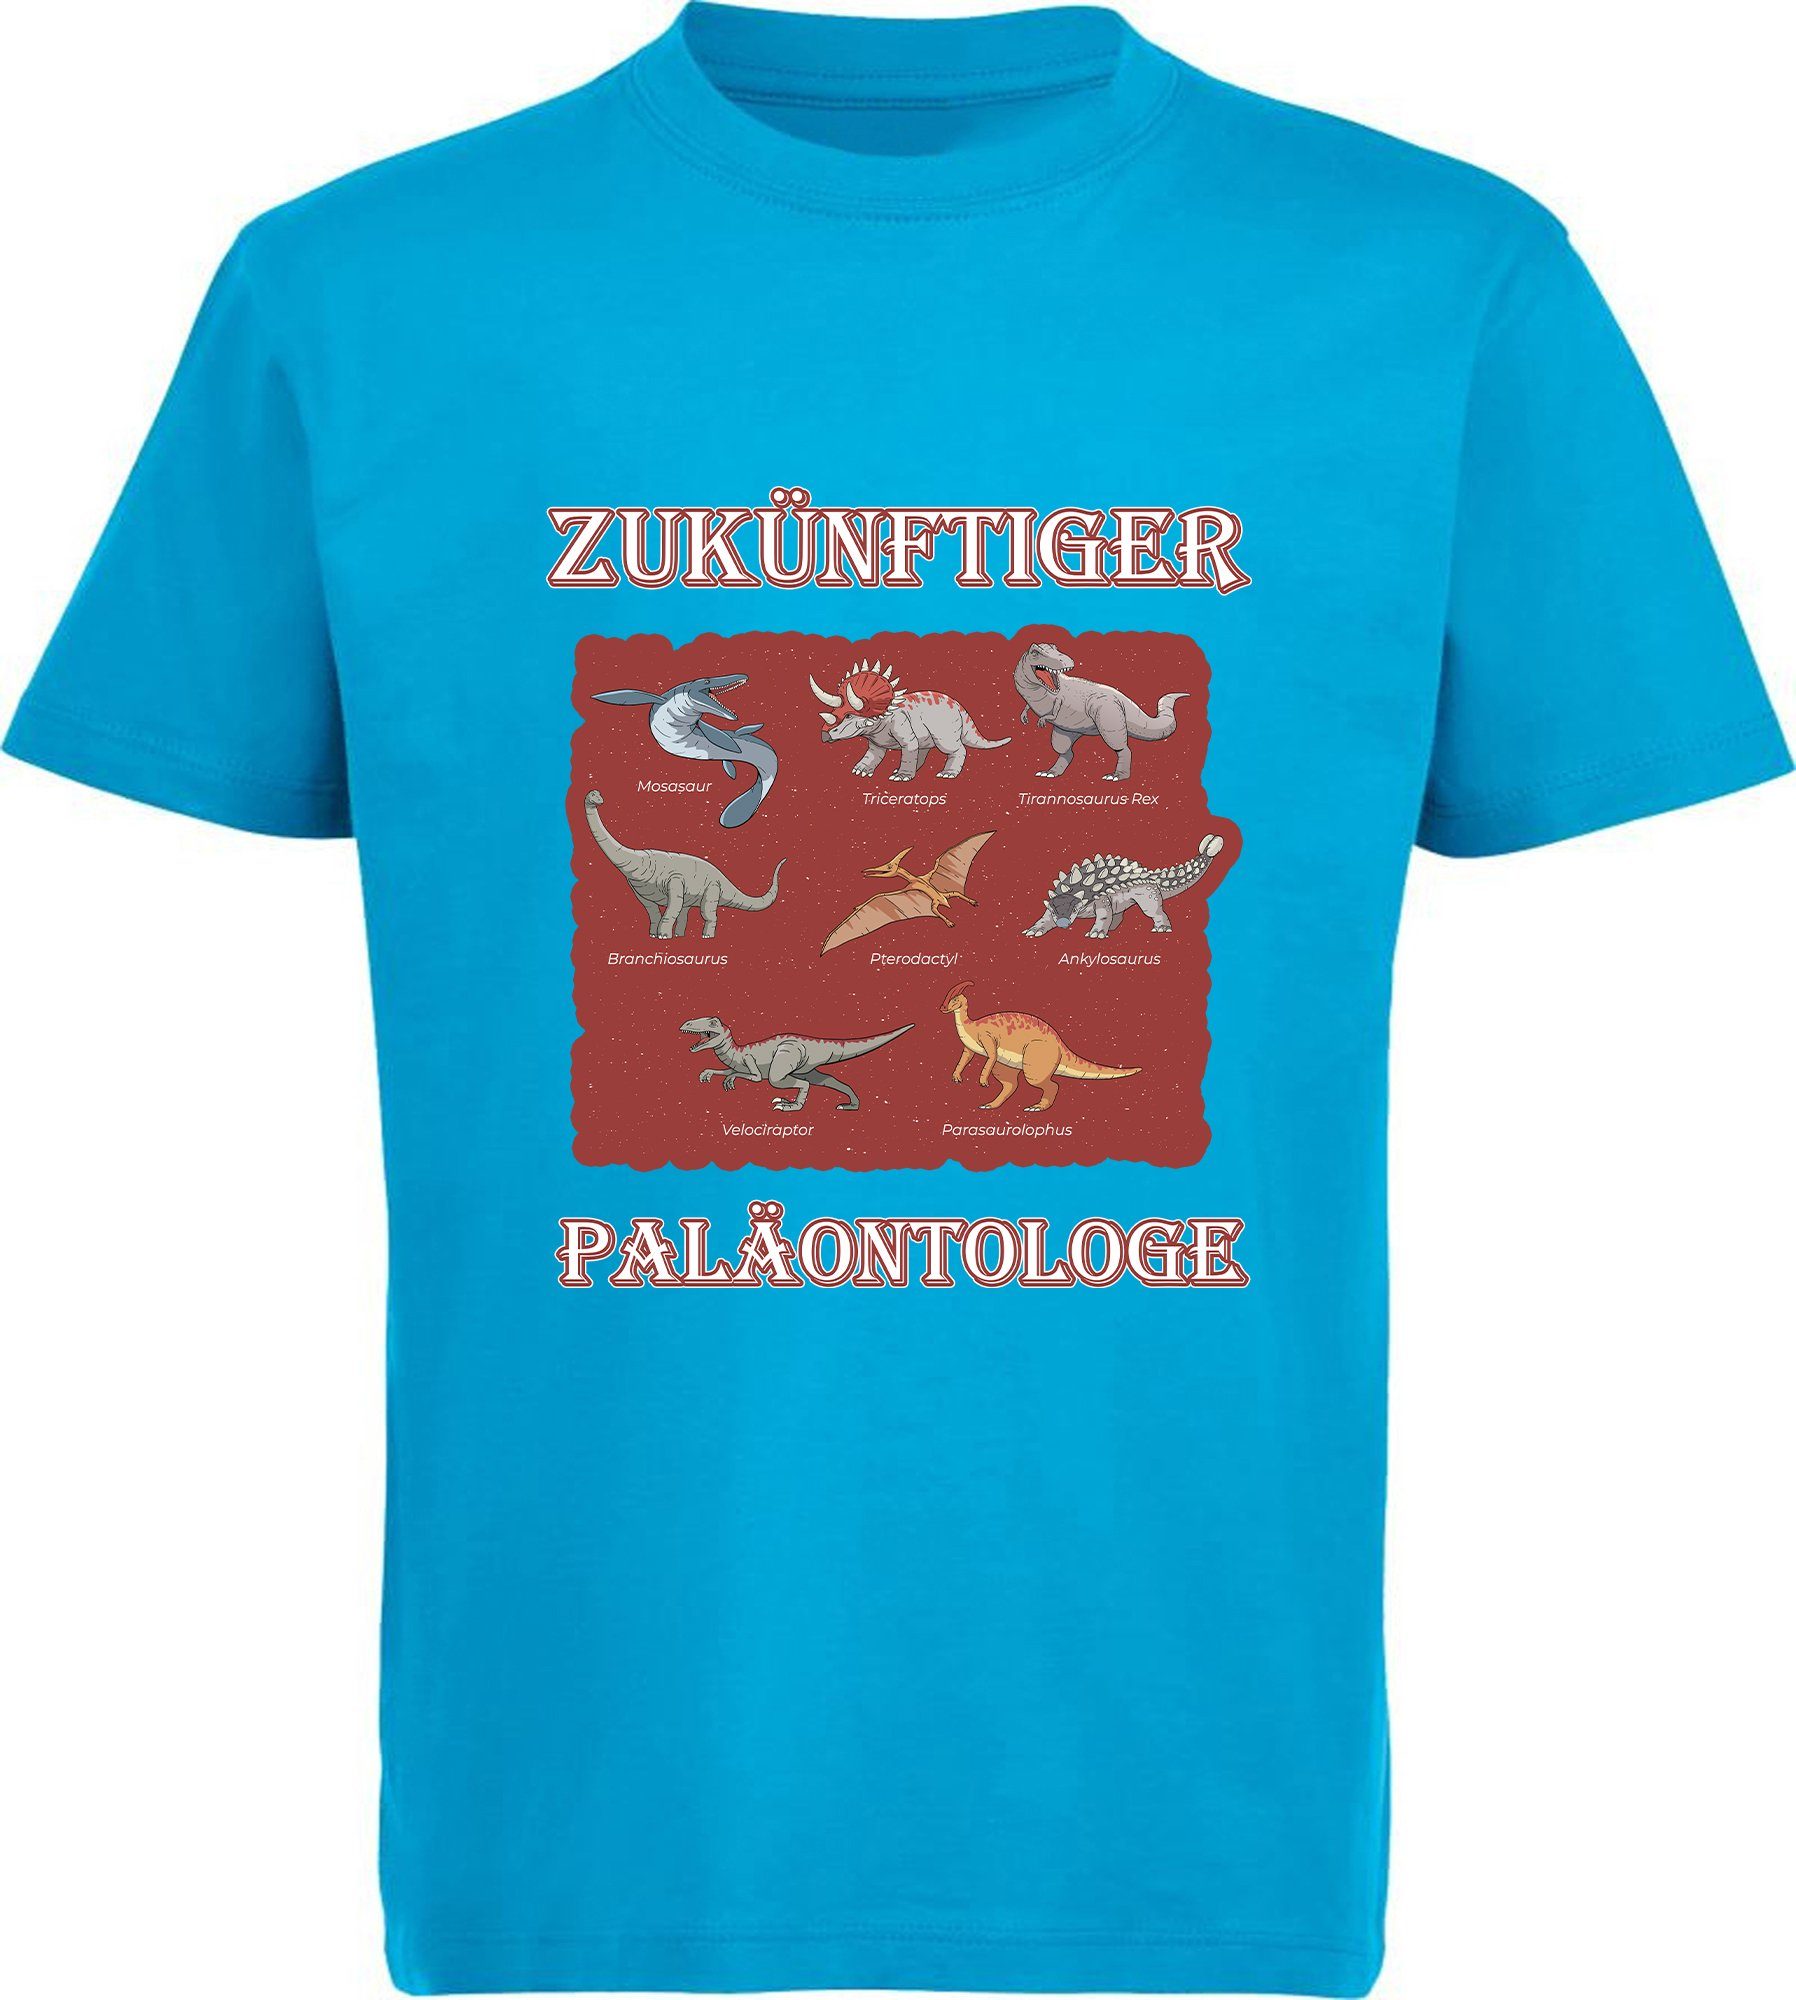 MyDesign24 T-Shirt bedrucktes Kinder T-Shirt Paläontologe mit vielen Dinosauriern 100% Baumwolle mit Dino Aufdruck, aqua blau i50 | T-Shirts